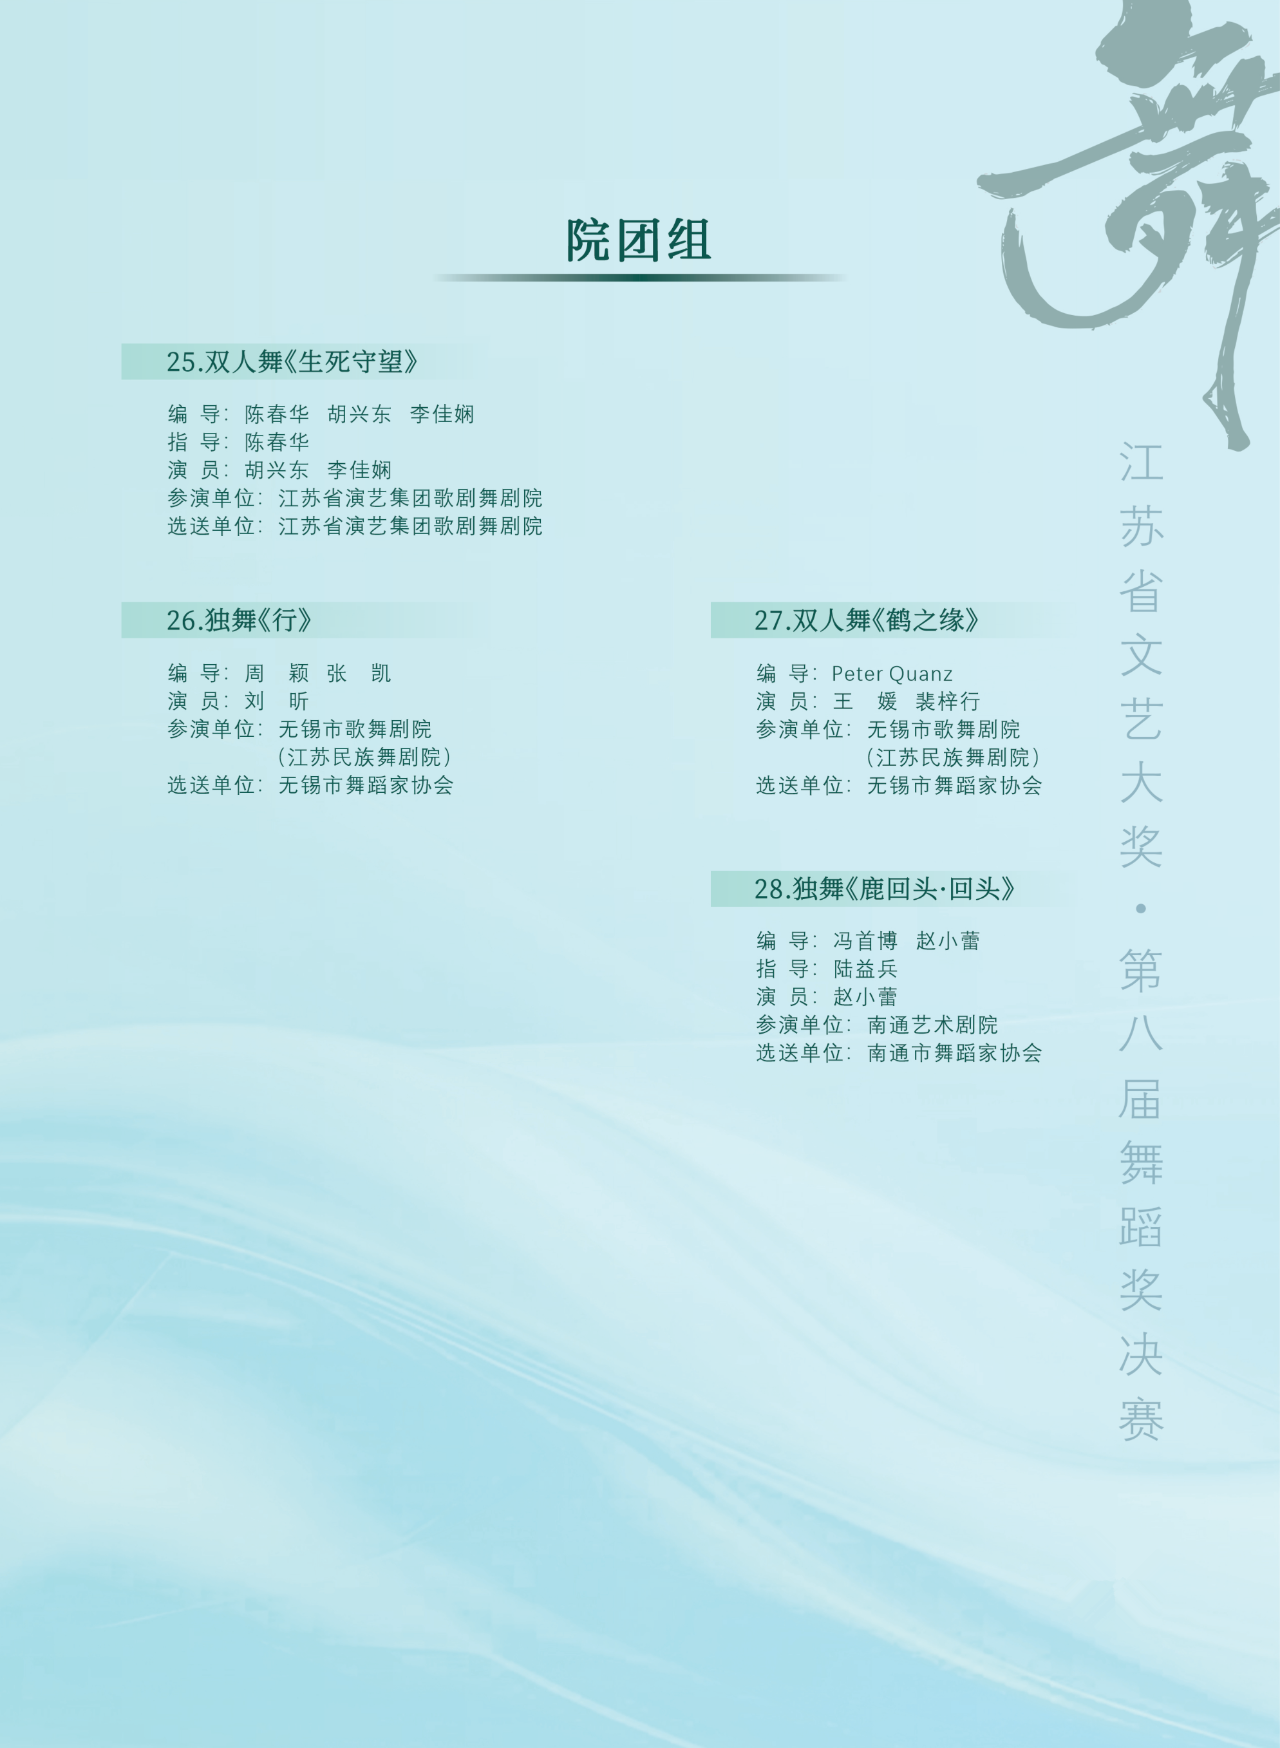 直播预告| 2023年江苏省文艺大奖·第八届舞蹈奖决赛将于10月31日在南通开赛